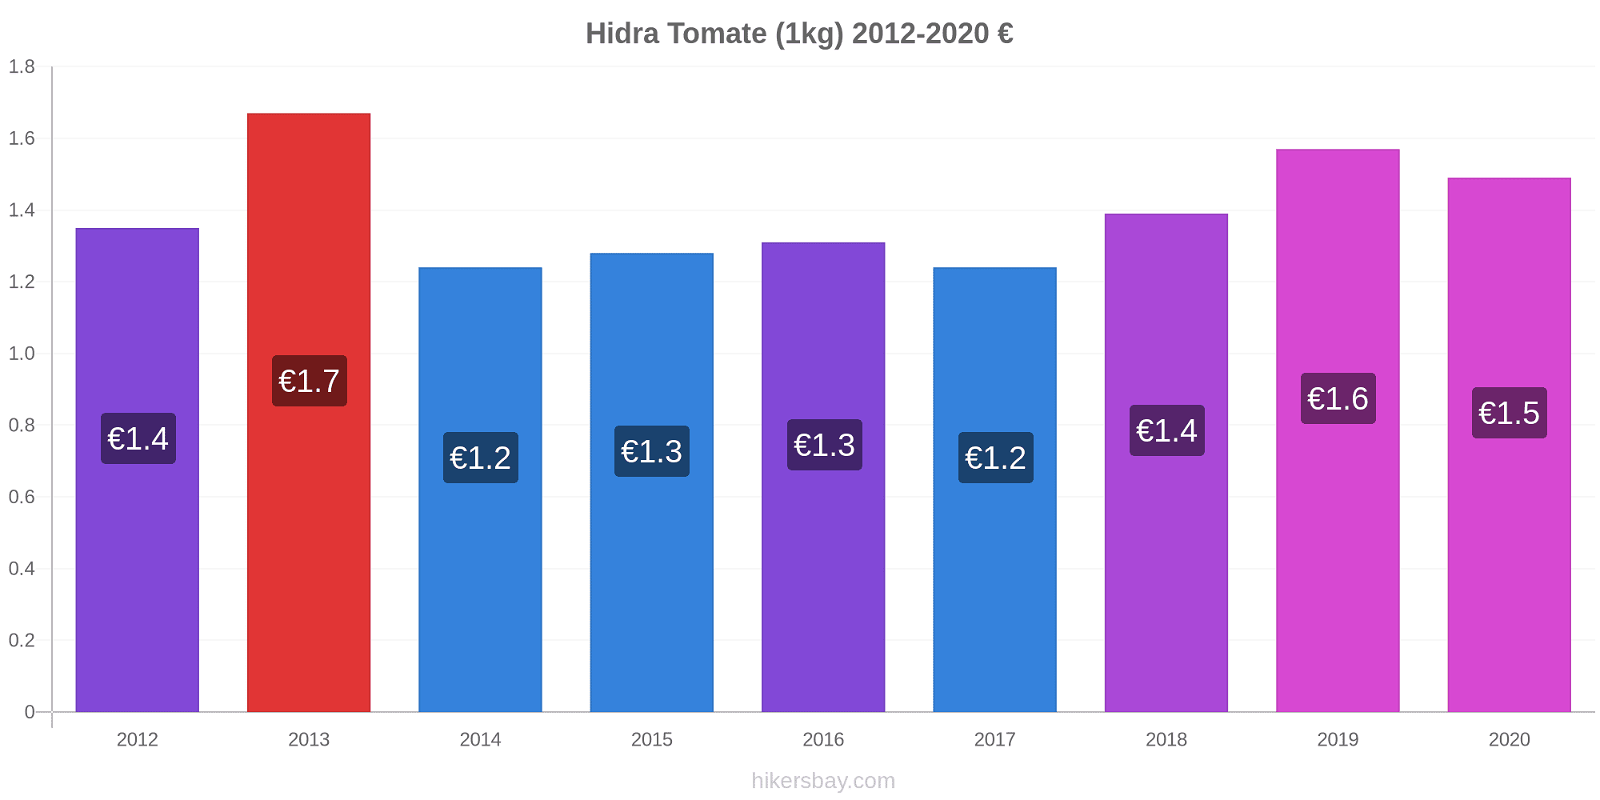 Hidra cambios de precios Tomate (1kg) hikersbay.com